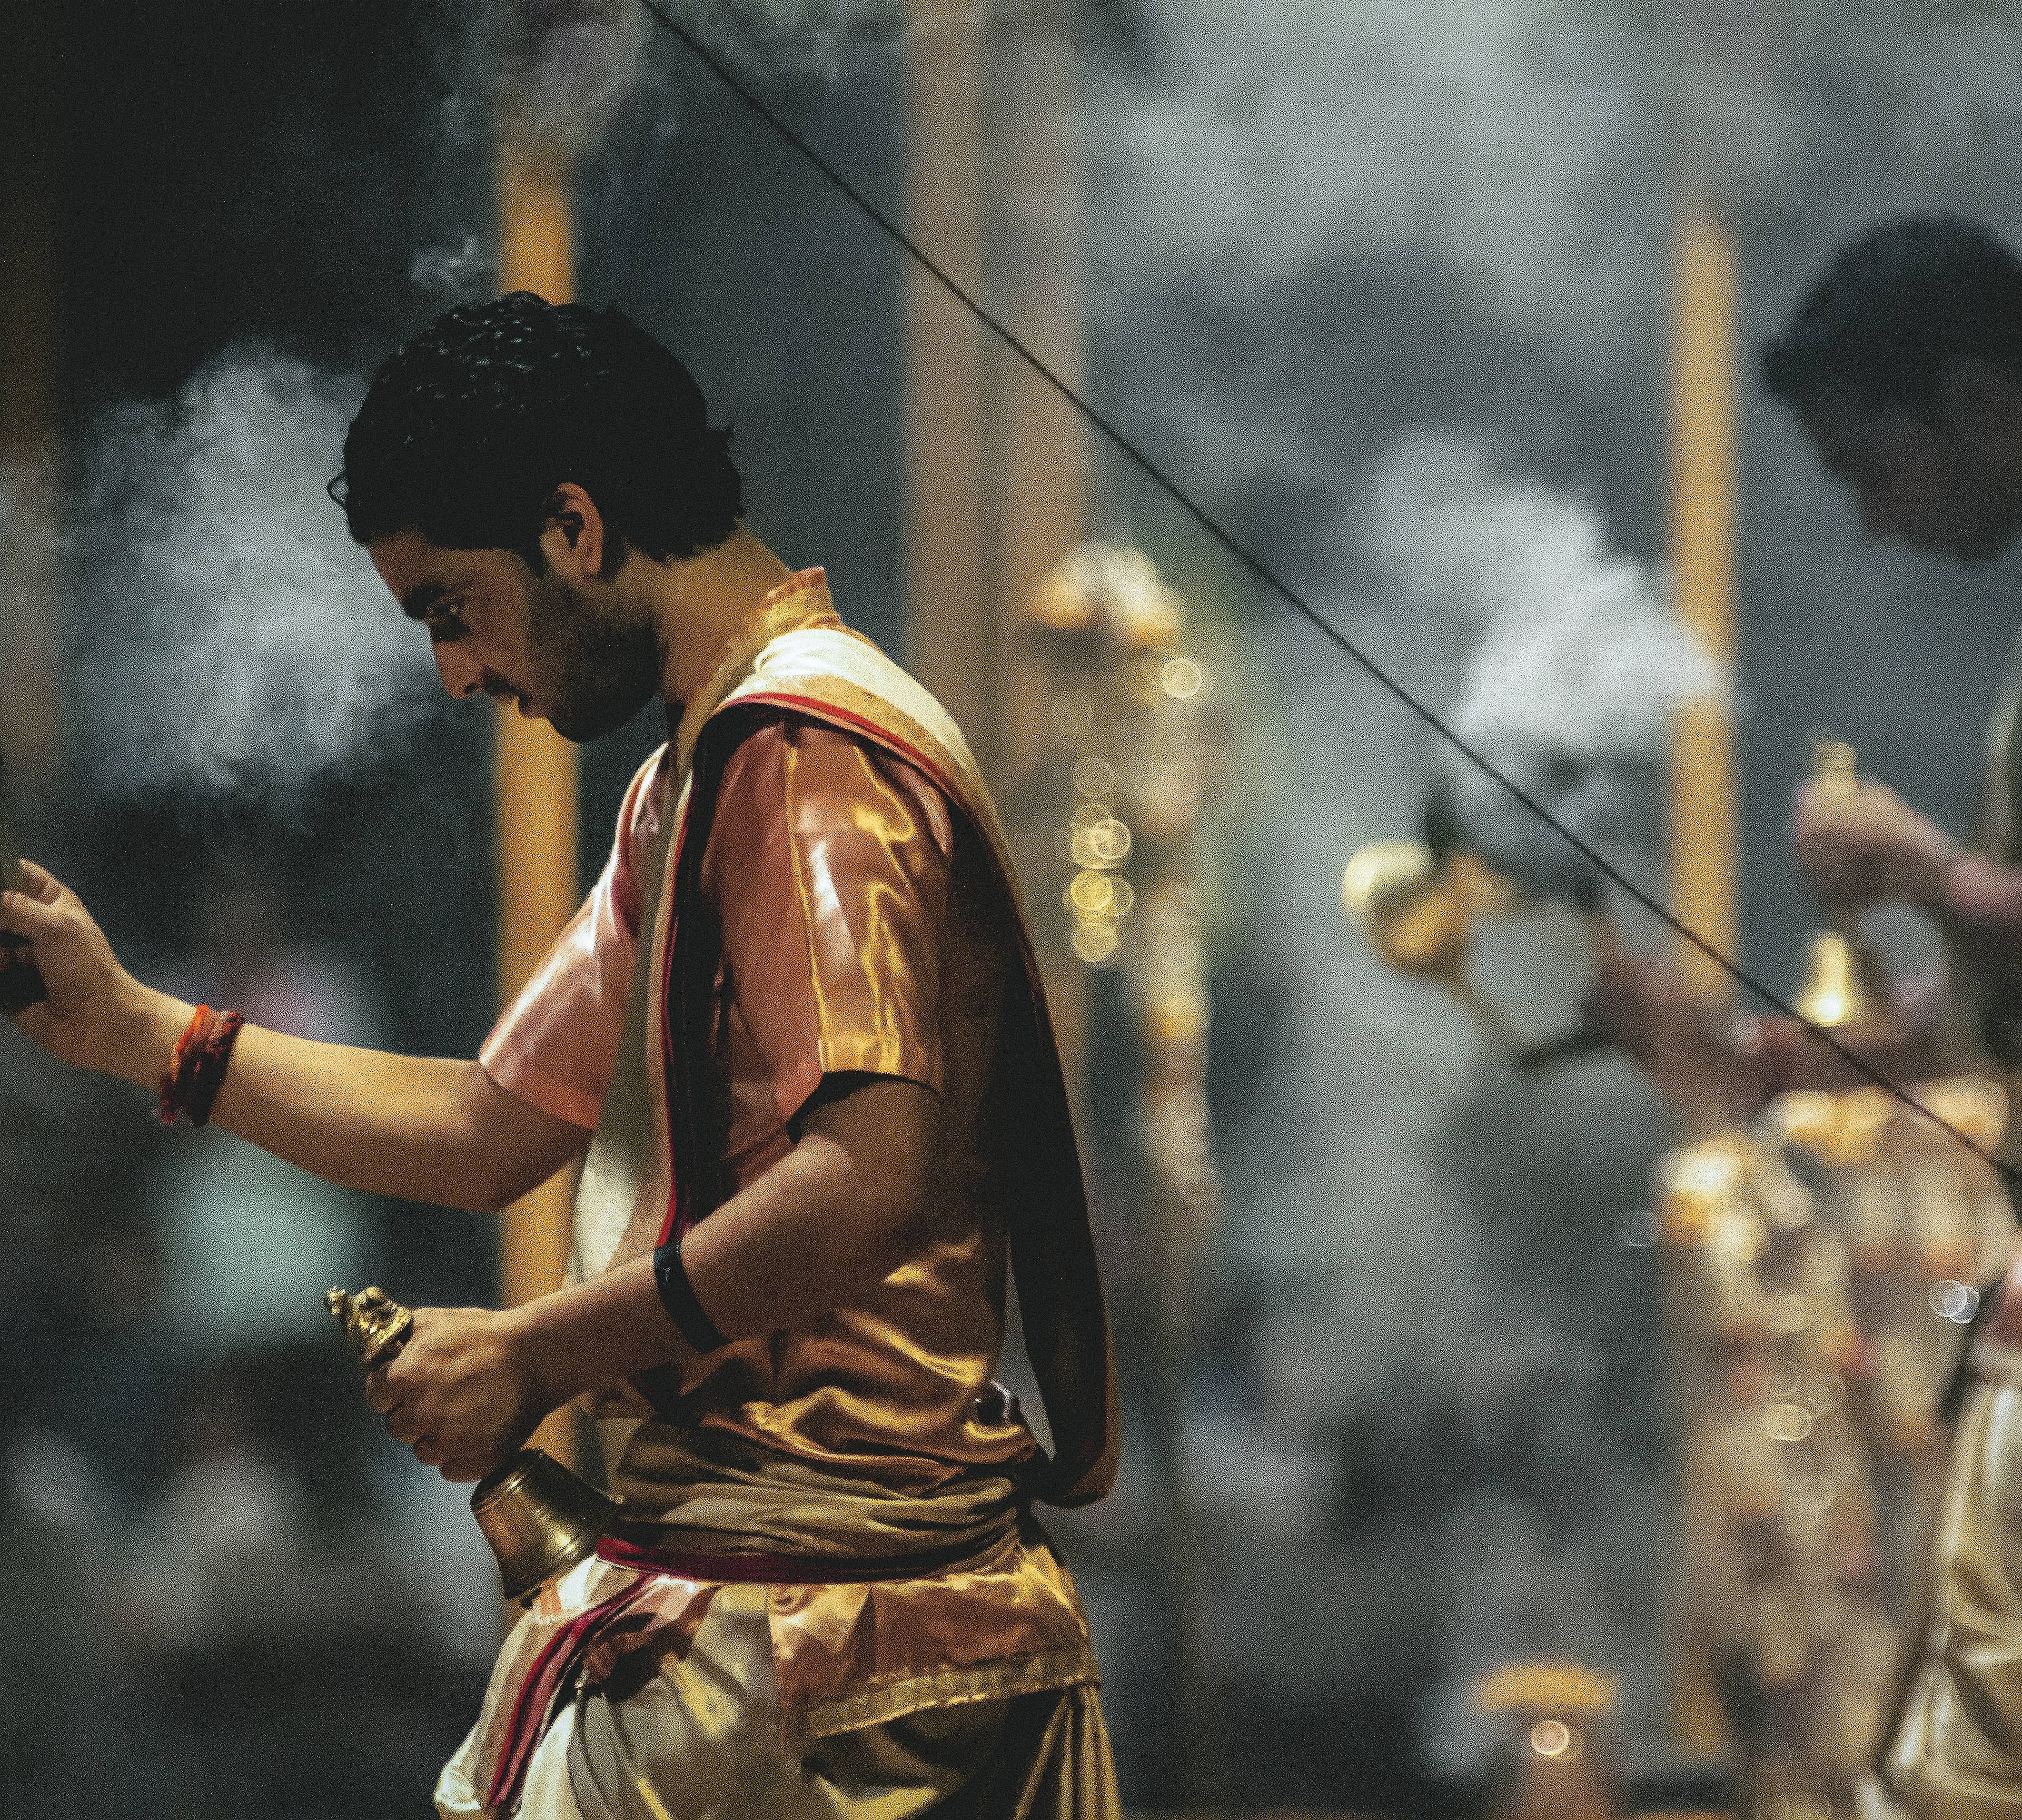 Rituale während einer hinduistischen Zeremonie